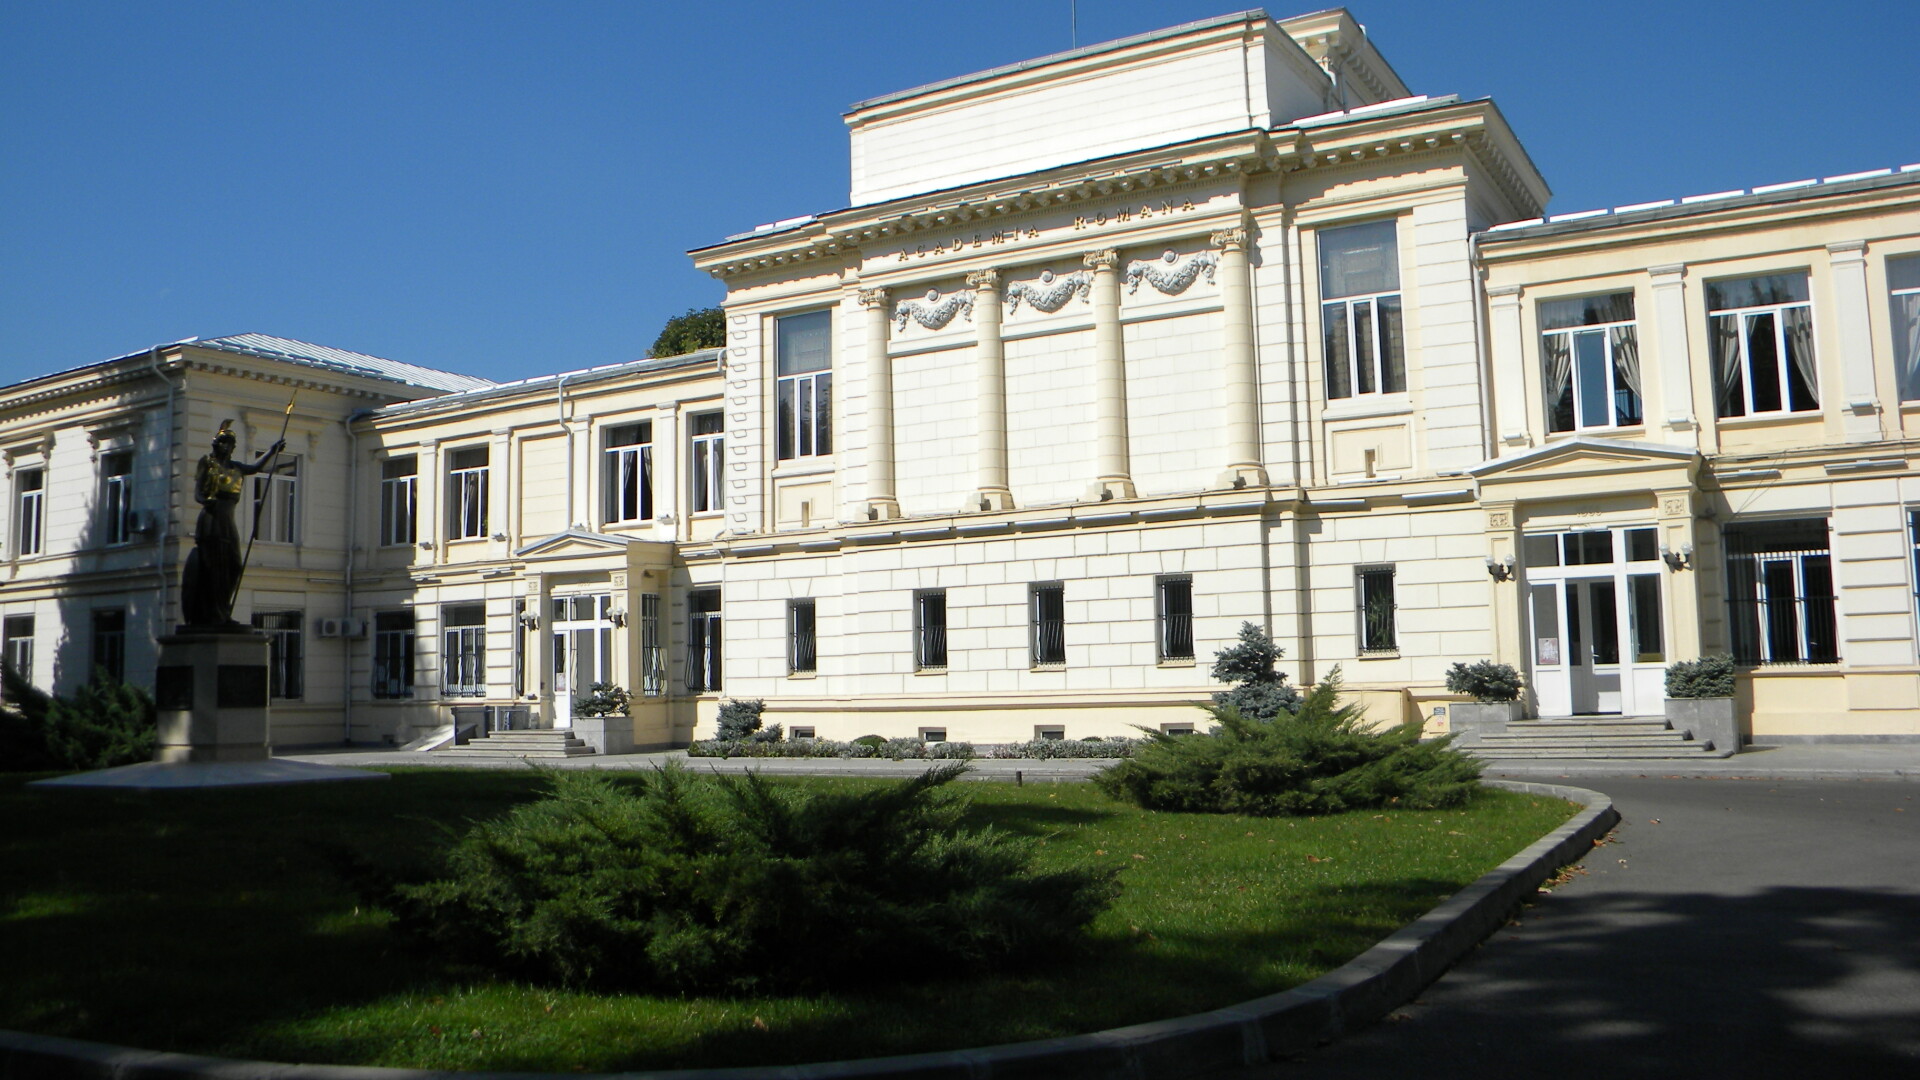 Academia Romana